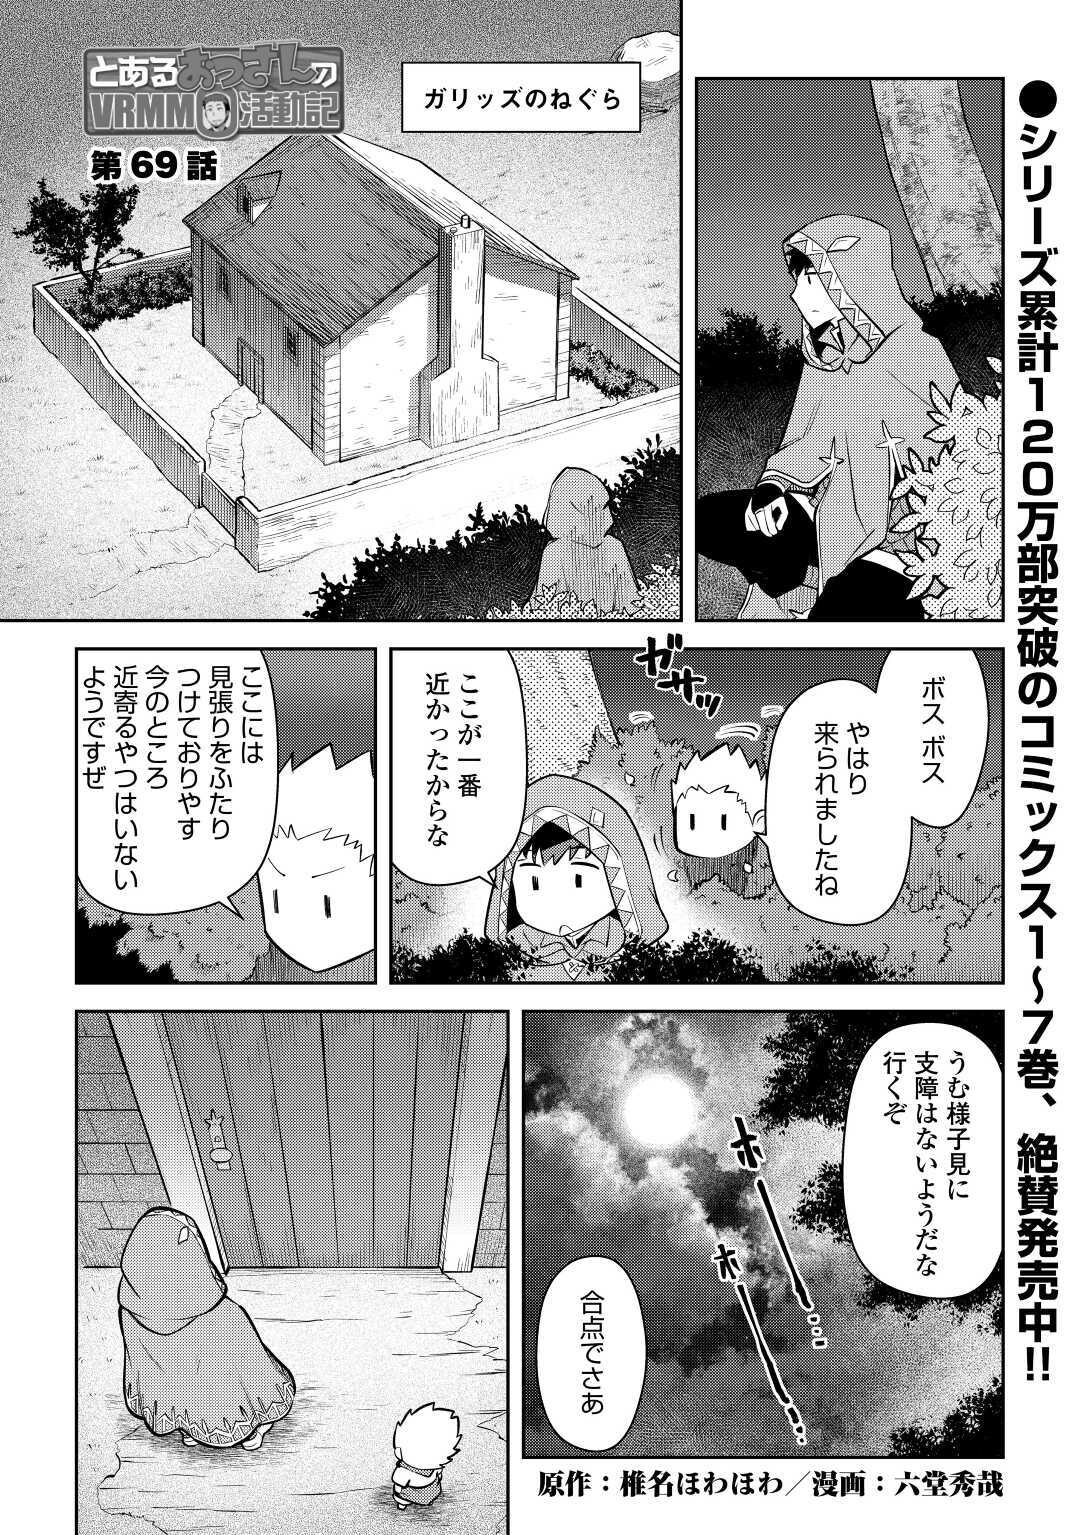 Toaru Ossan no VRMMO Katsudouki - Chapter 69 - Page 1